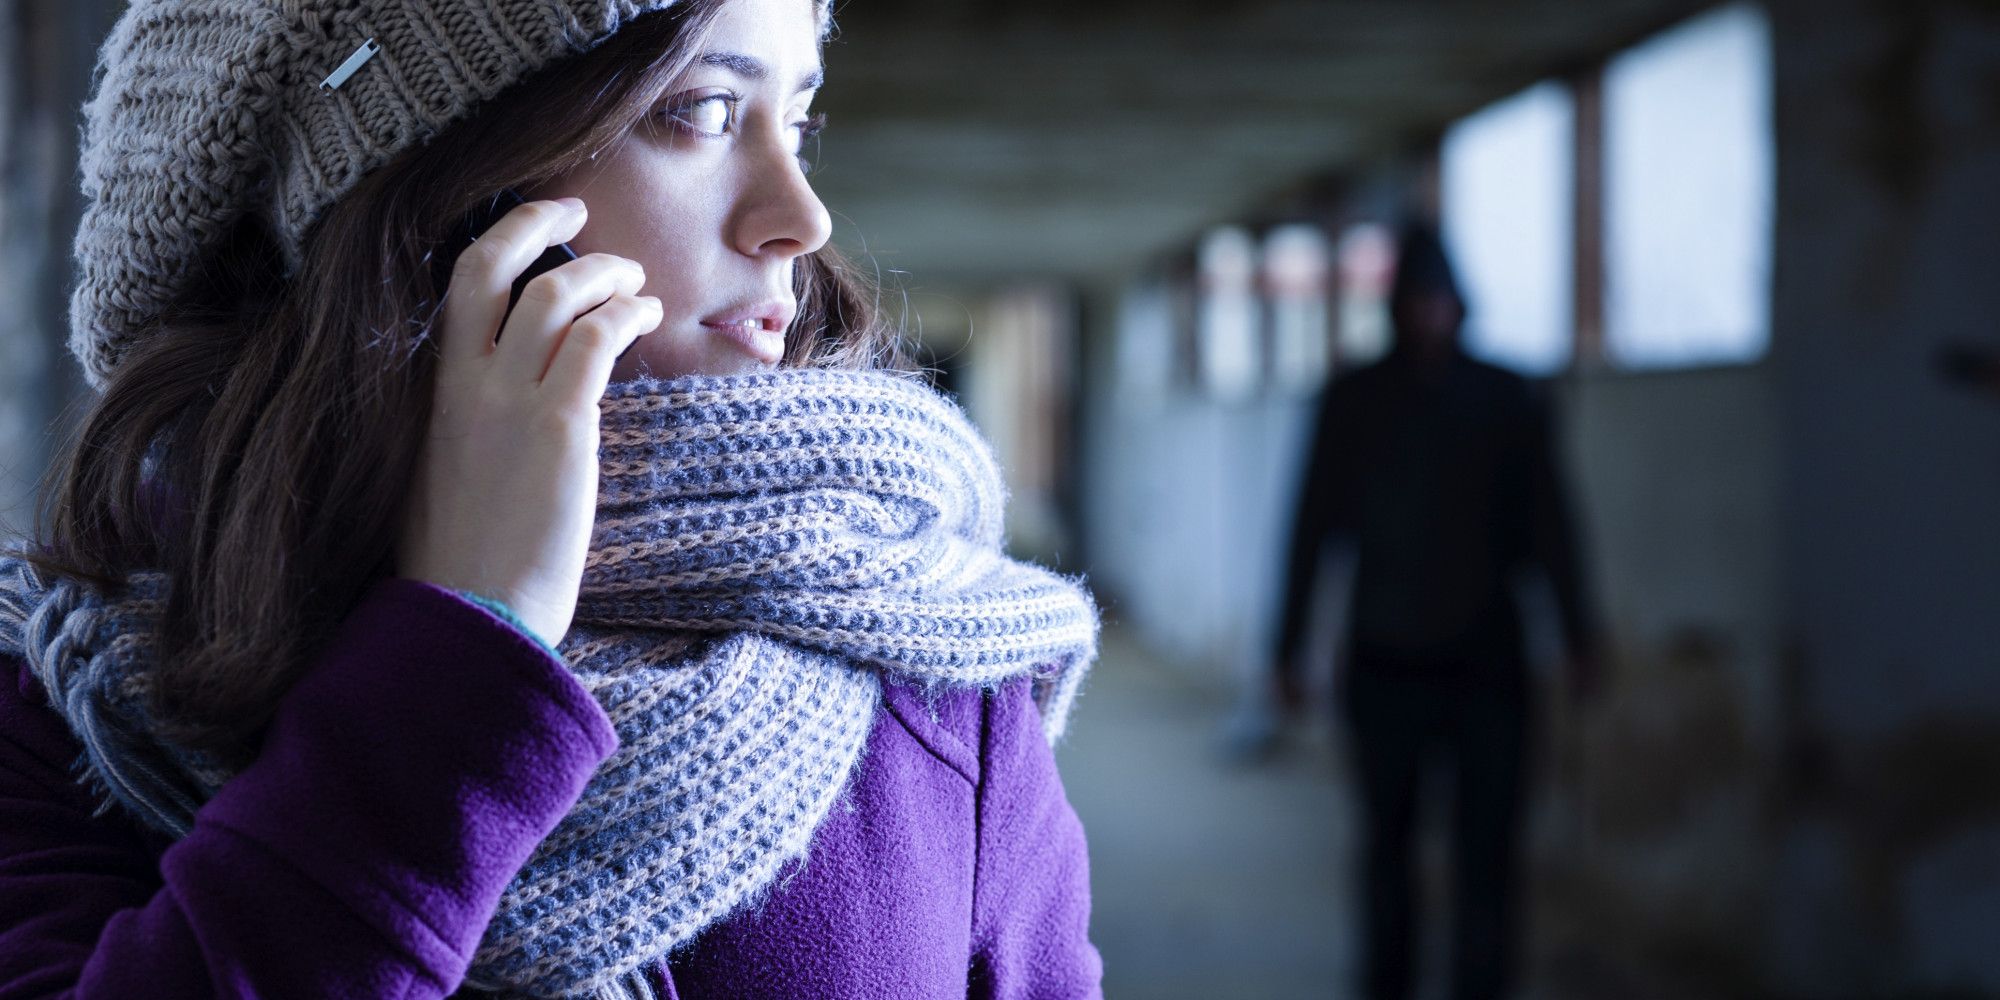 Ecco l’app che aiuta le donne contro lo stalking